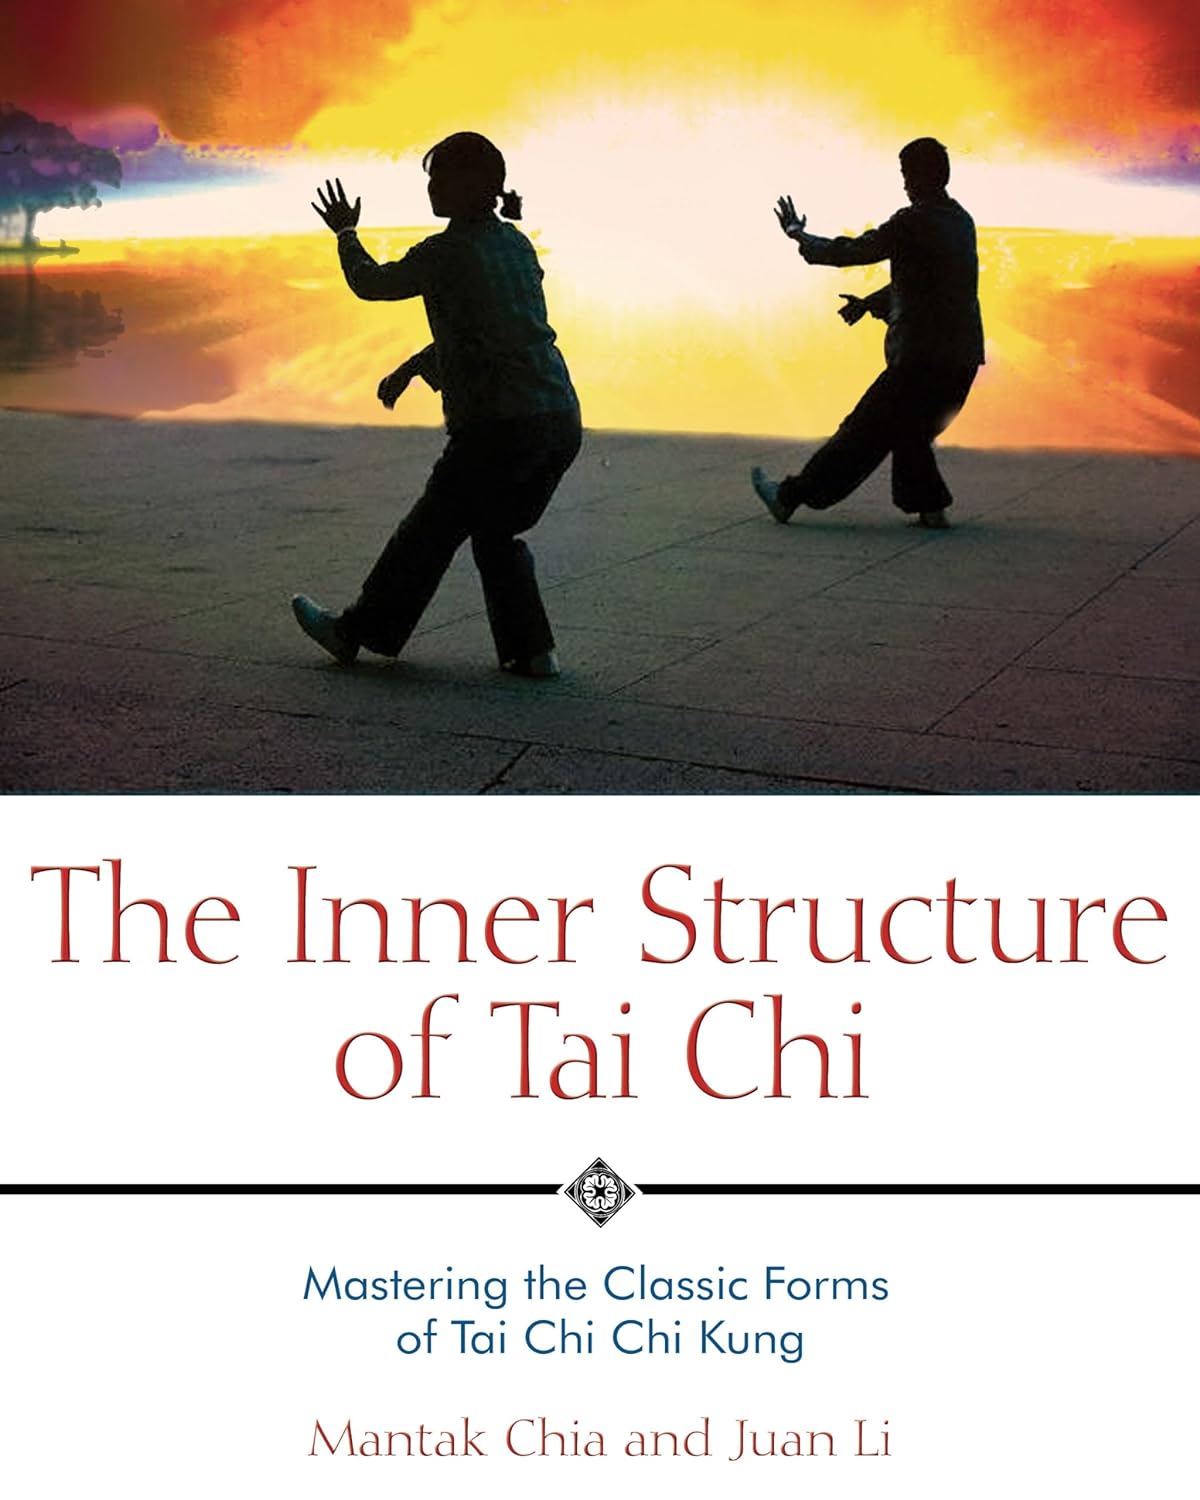 Estructura interna del Tai Chi: libro de Tai Chi y Chi Kung de Mantak Chia (usado)